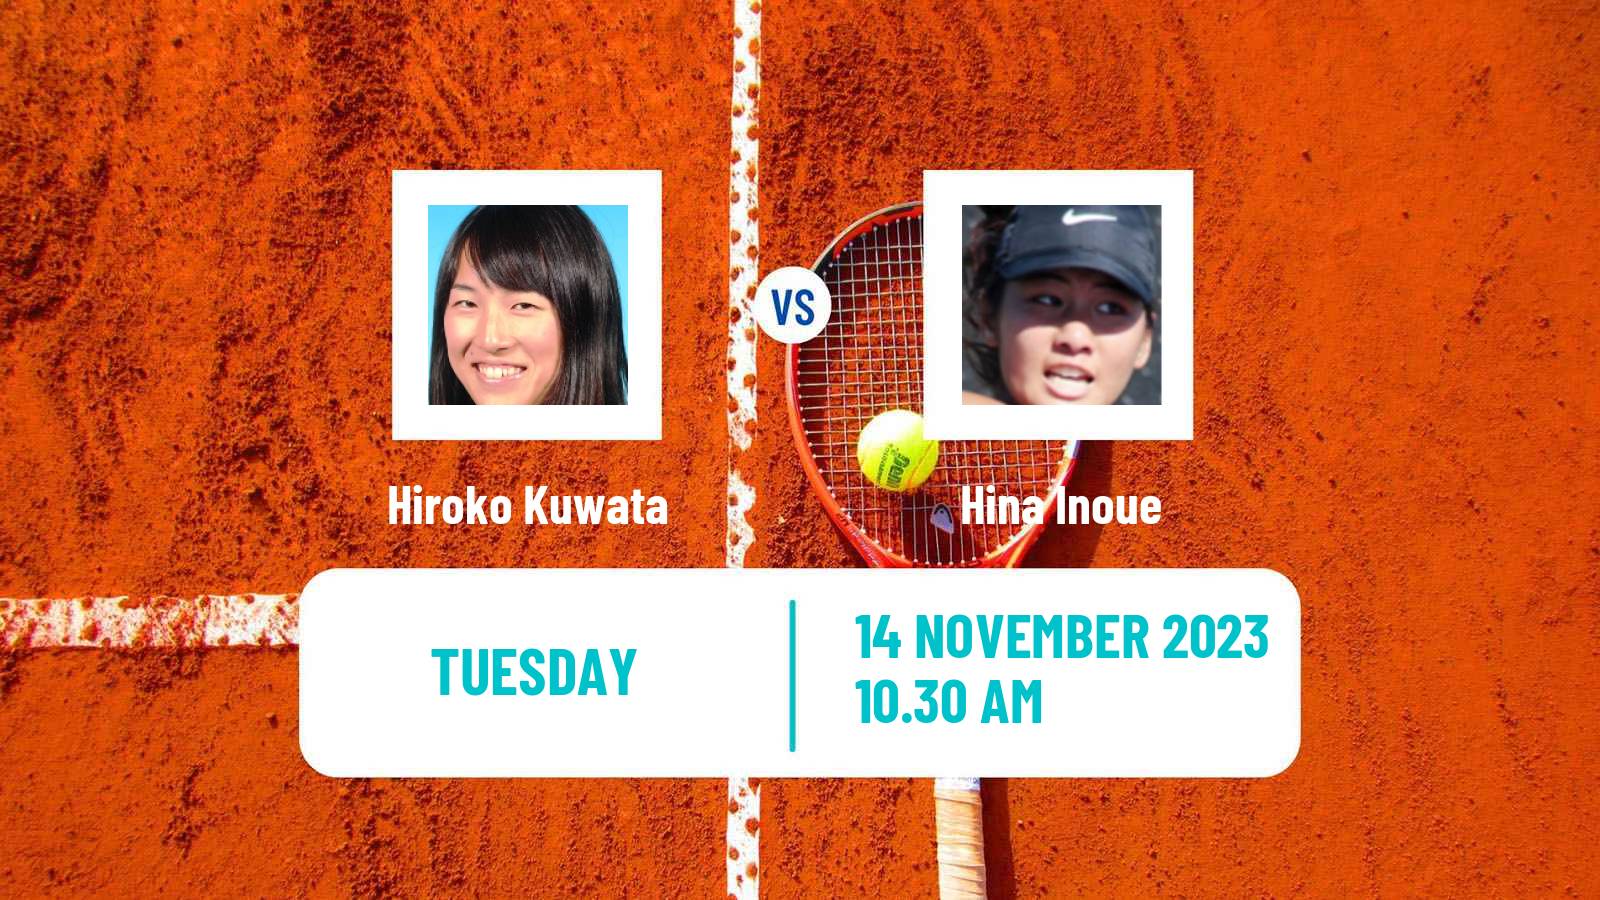 Tennis ITF W25 Santo Domingo 6 Women Hiroko Kuwata - Hina Inoue